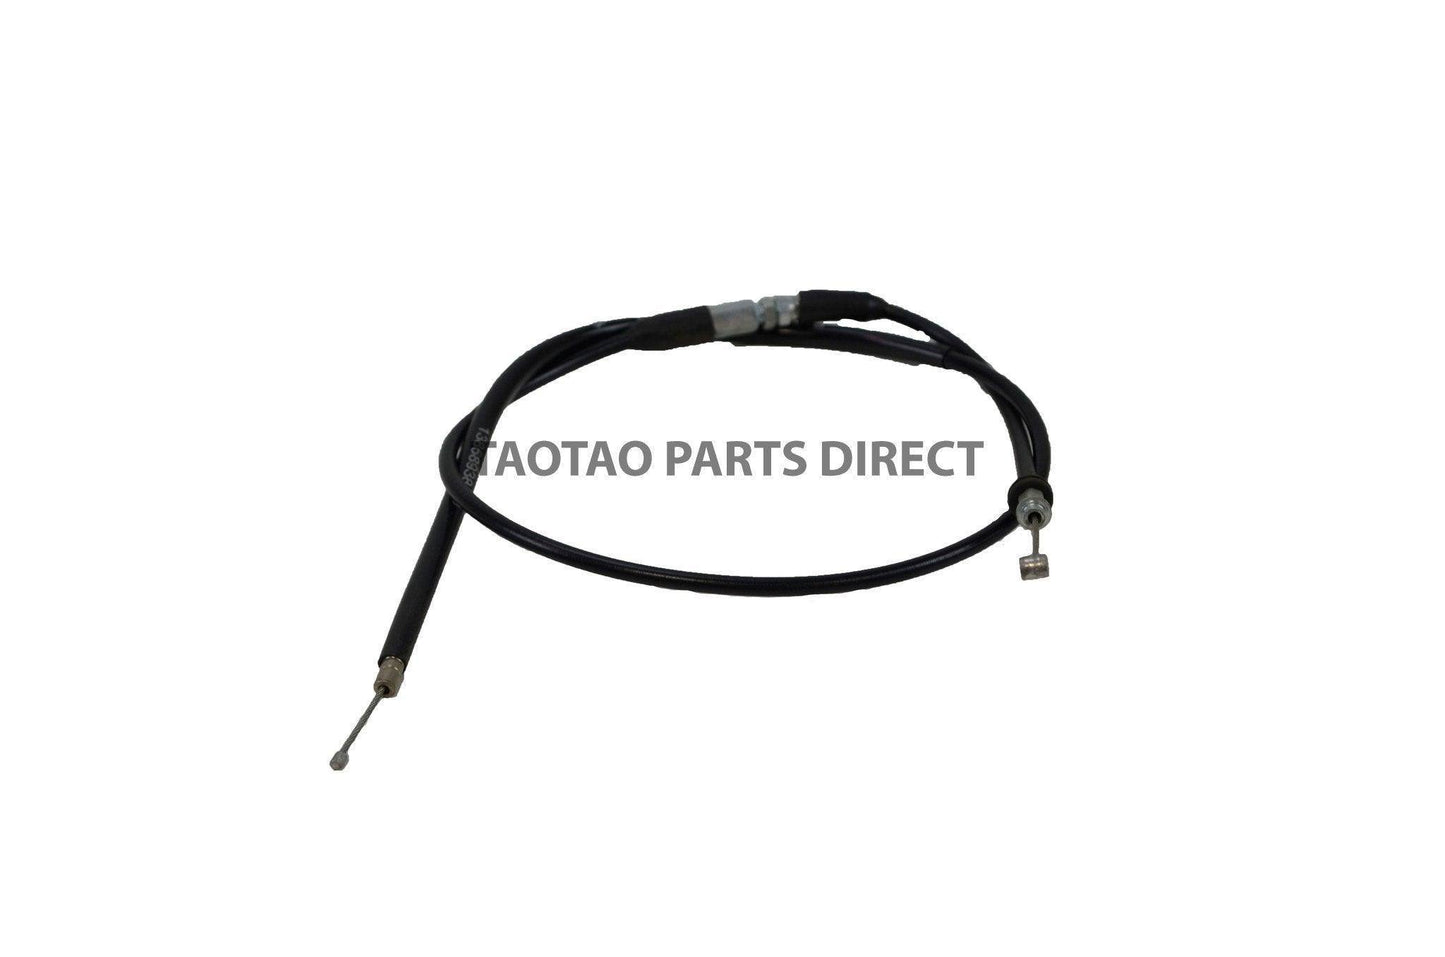 ATD125C Throttle Cable - TaoTao Parts Direct